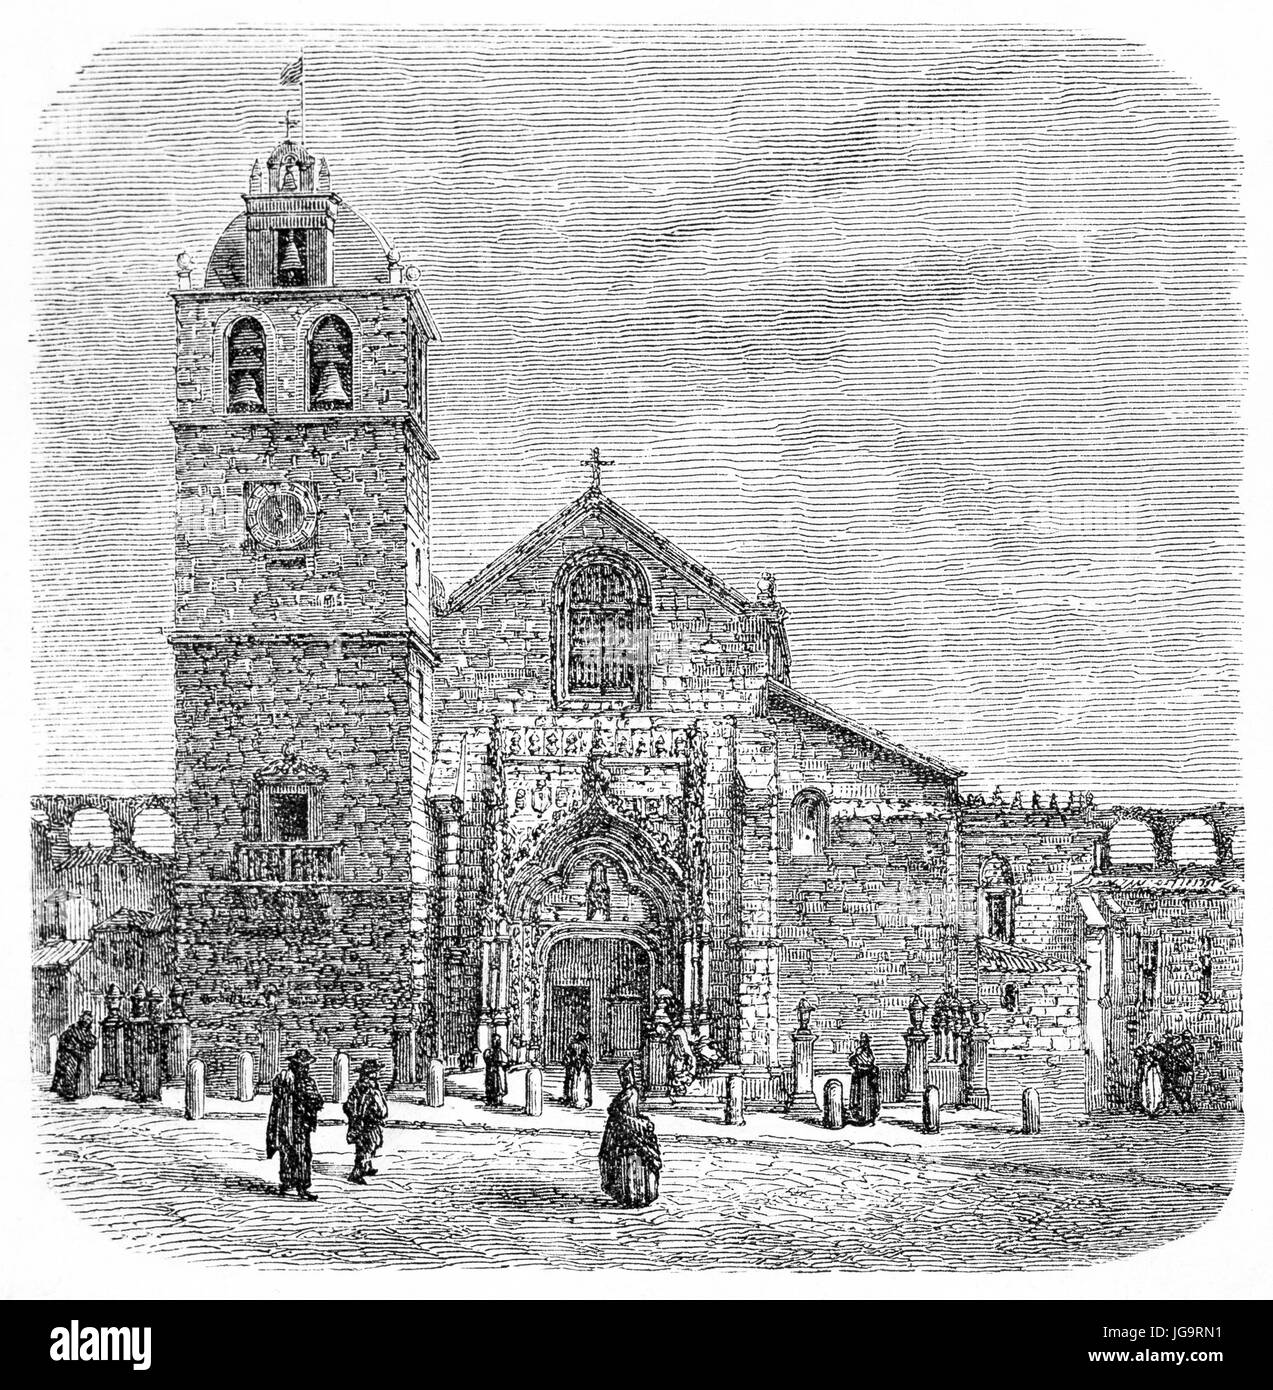 Fassade aus Steinziegel Matriz Kirche in Vila do Conde und Front-Platz, Nord-Portugal. Alte graue Ton Radierung Stil Kunst von Catenacci, 1861 Stockfoto